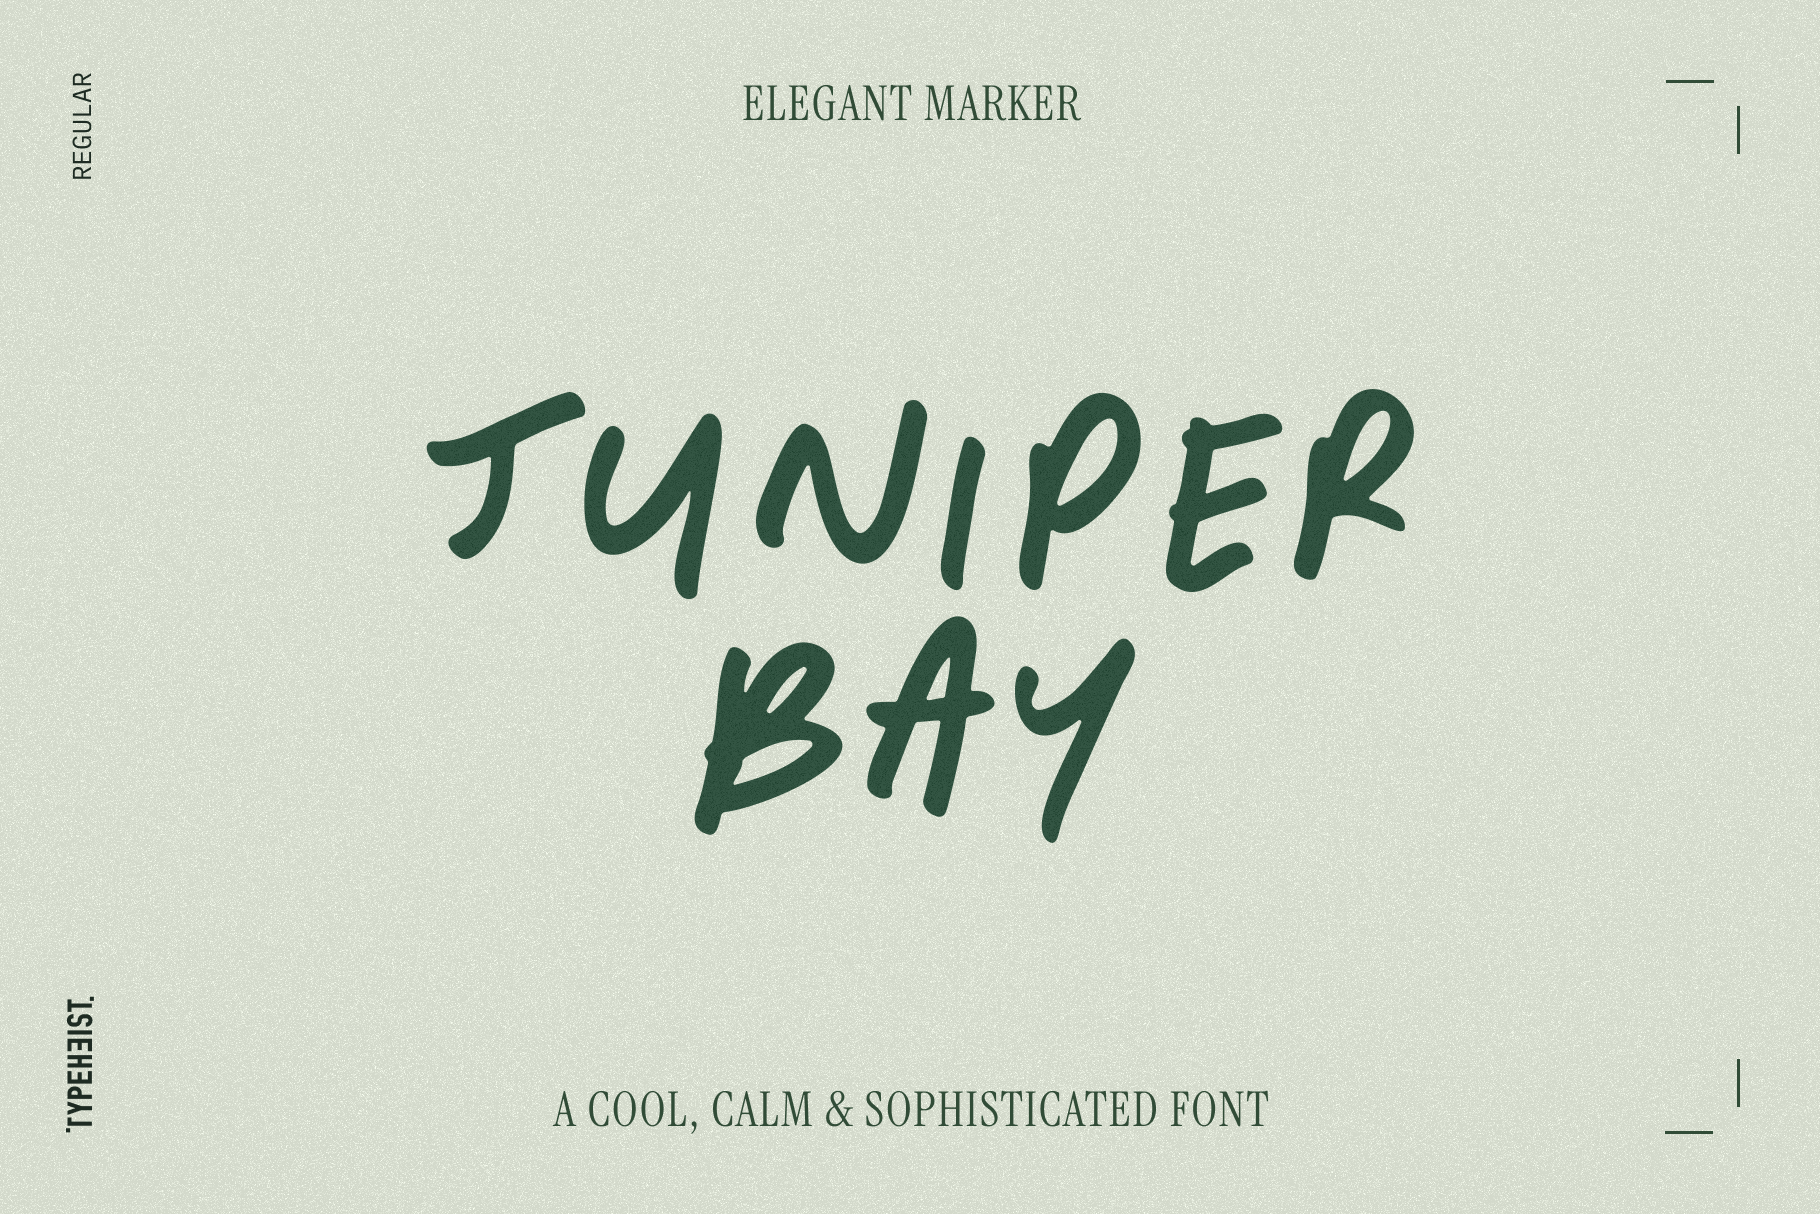 Juniper Bay: A cool, calm & sophisticated font